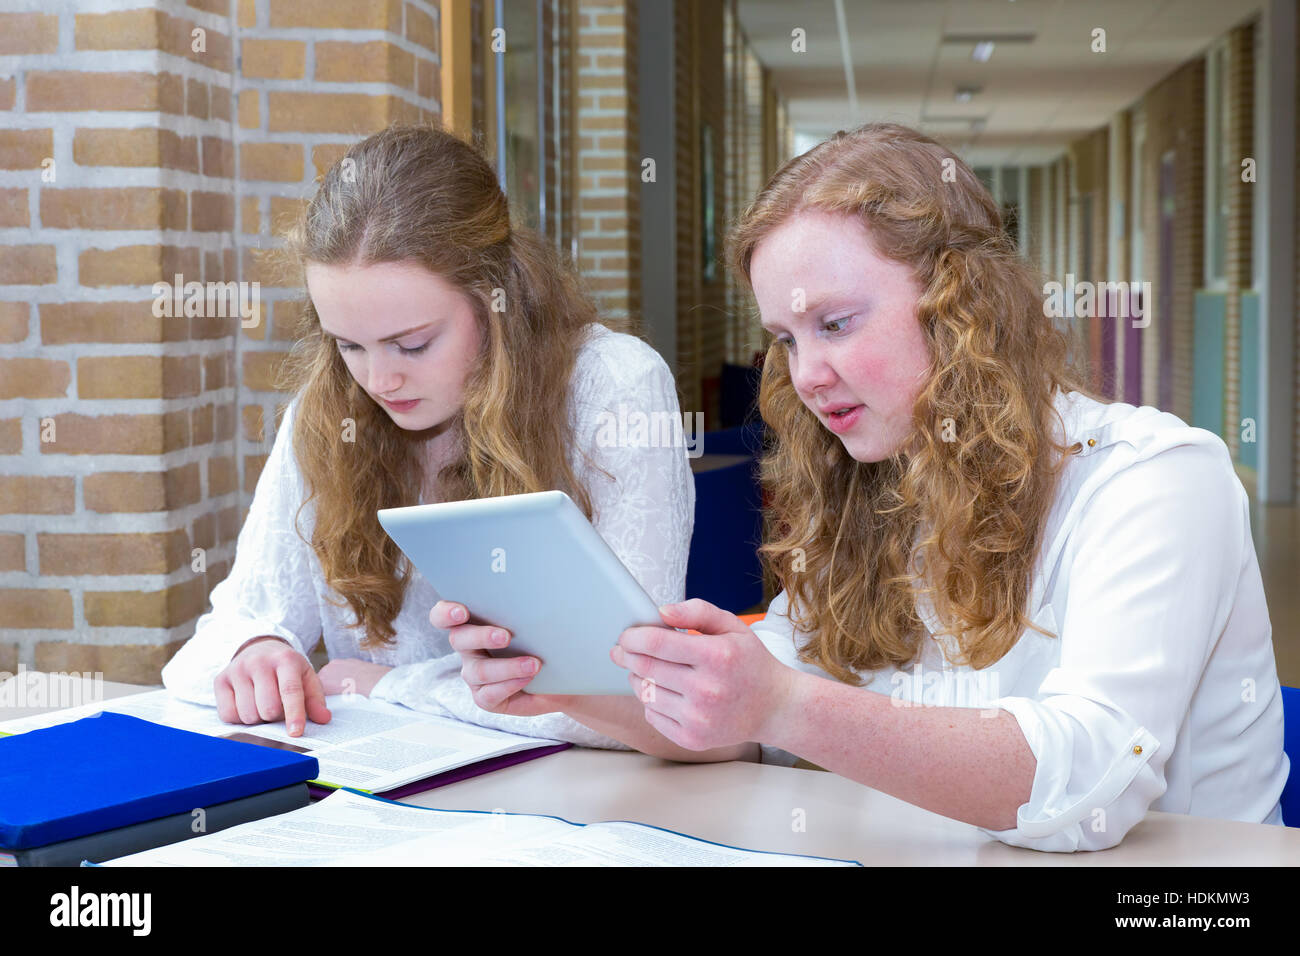 Zwei niederländische Mädchen im Teenageralter im Korridor der High School zu studieren Stockfoto